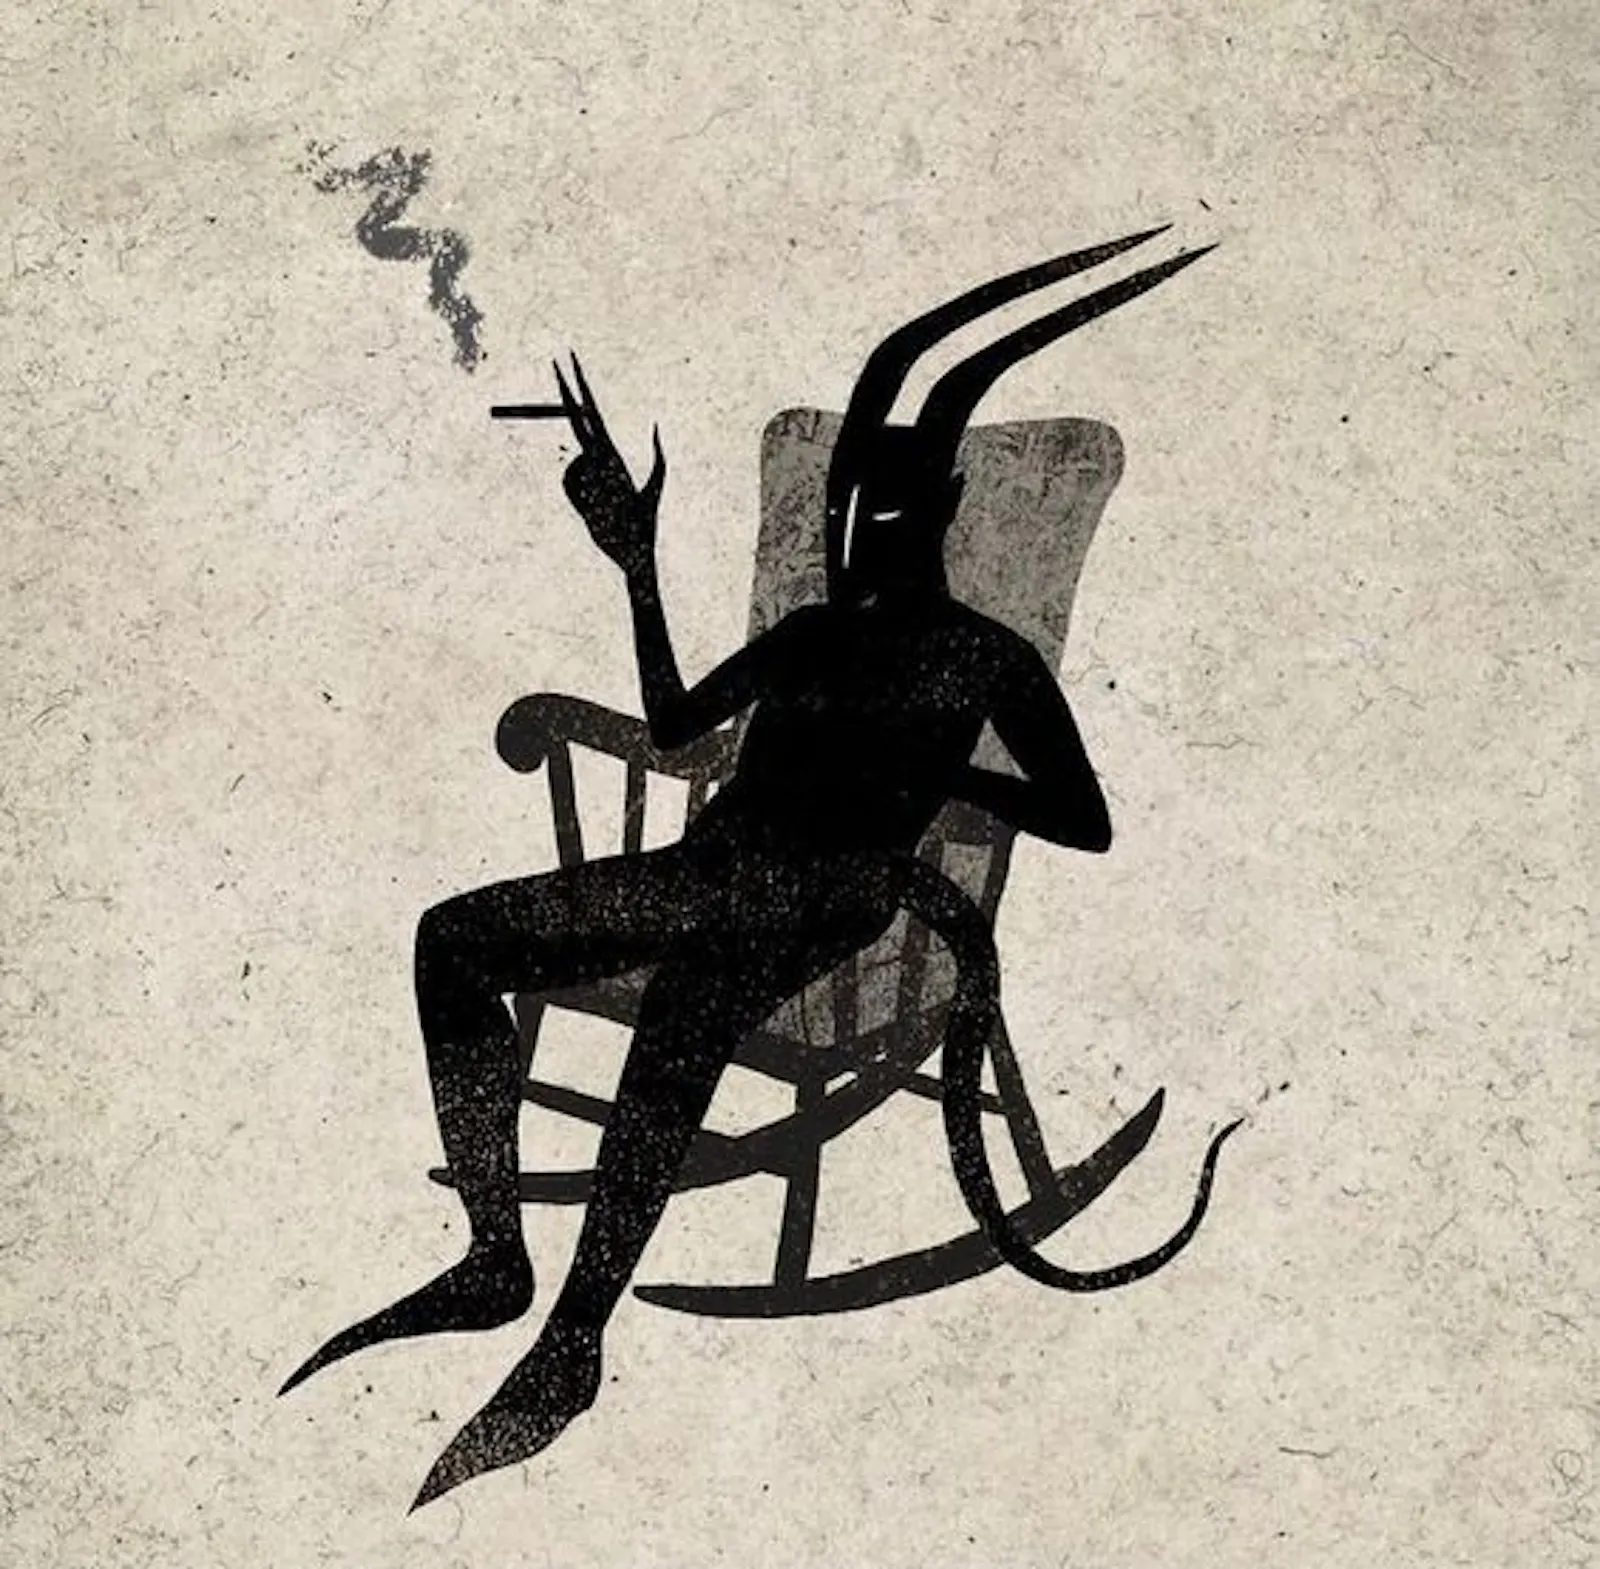 La sagoma di una persona con le corna da Capricorno o da Diavolo, lunga coda e mani appuntite, seduta su una sedia a dondolo. Ha una sigaretta nella mano destra e l'aria stanca ma rilassata.